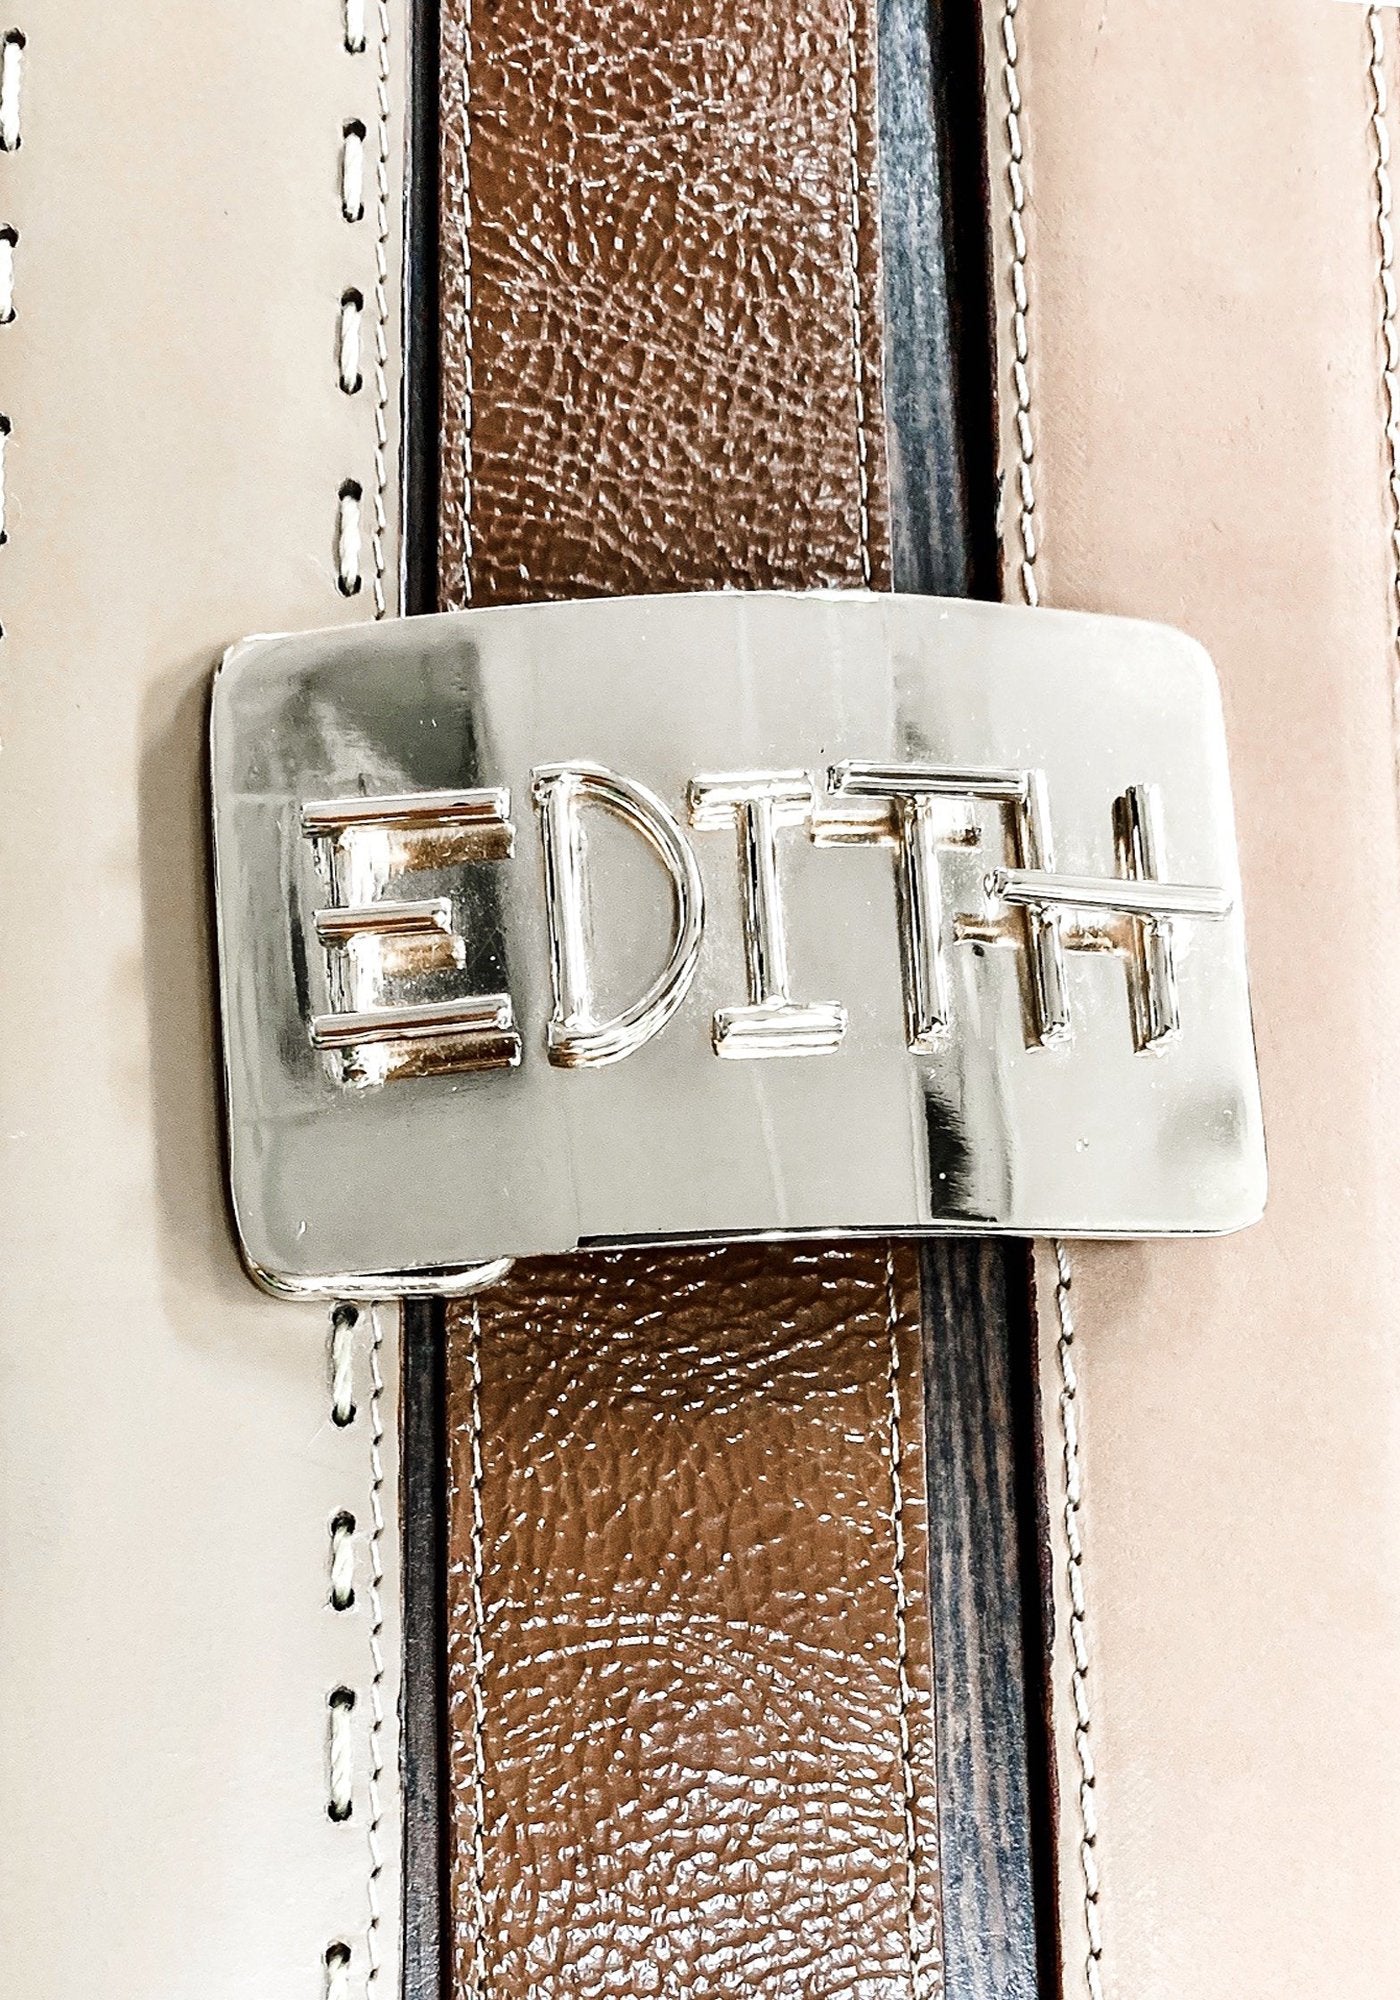 Personalised Belt Buckle Custom Monogram Initial Belt Buckle 